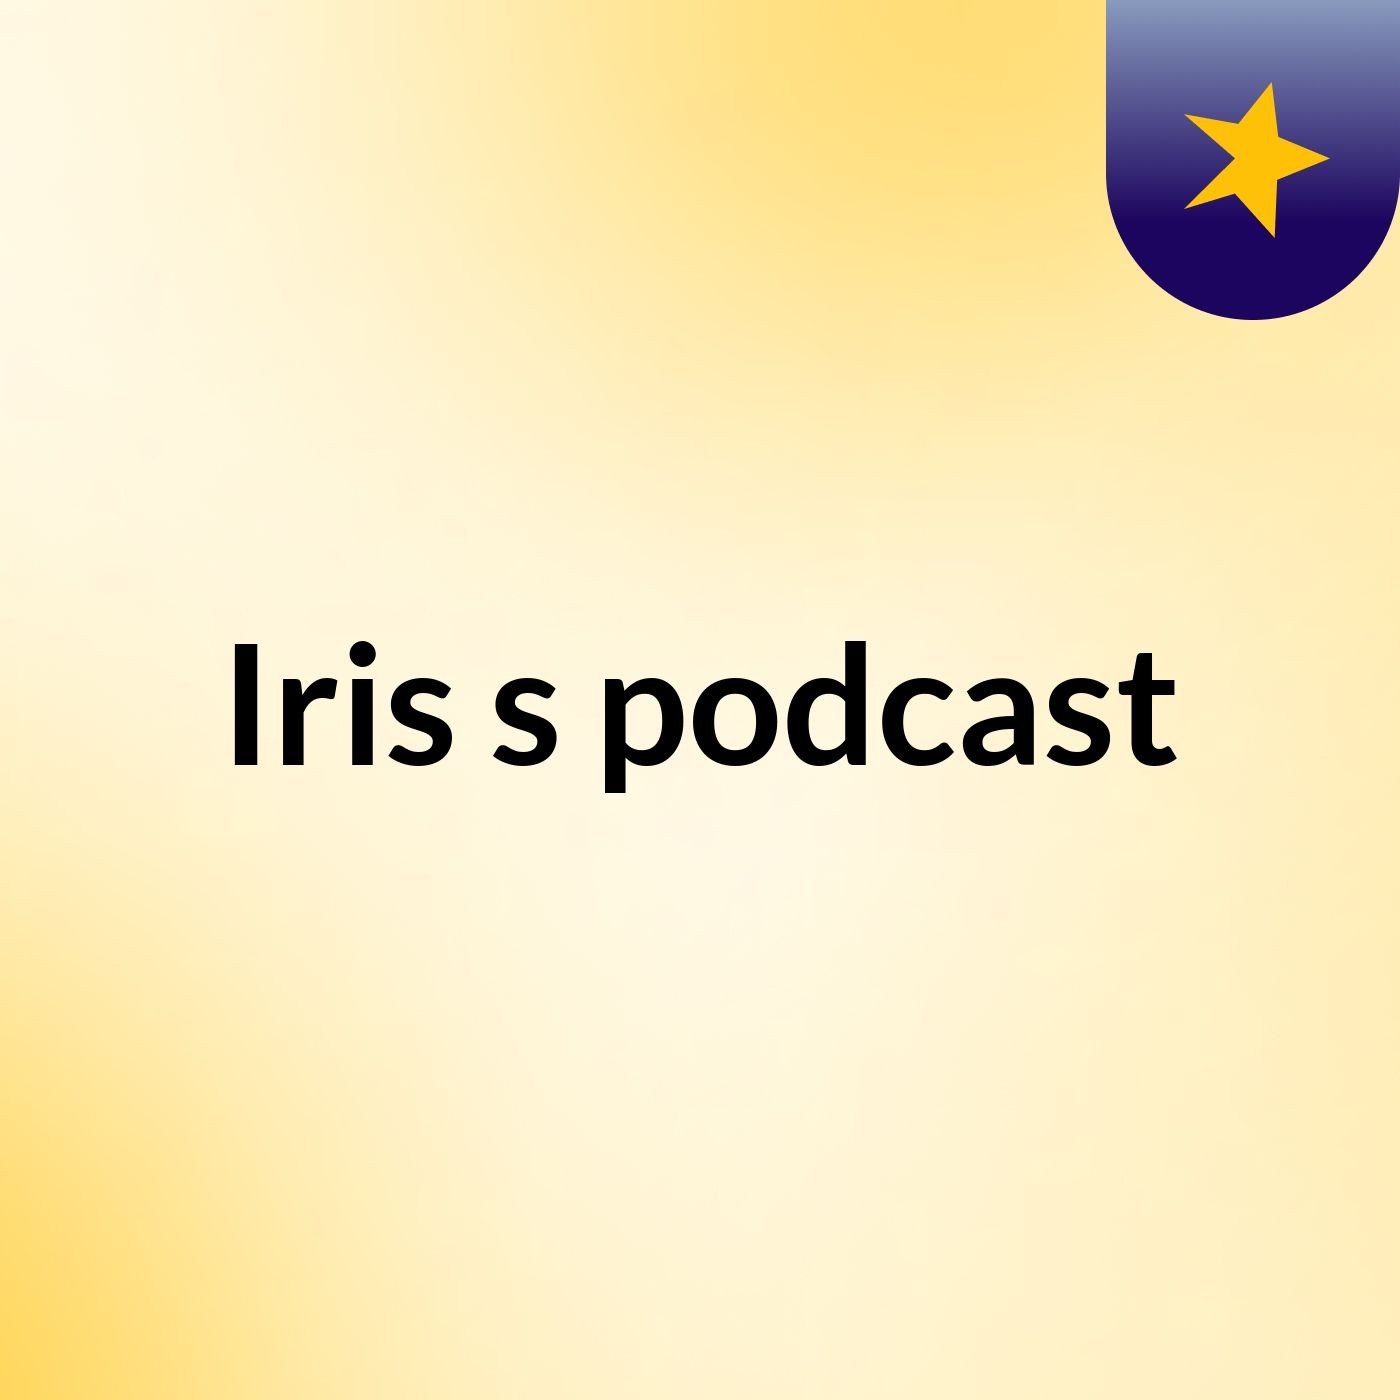 Iris's podcast